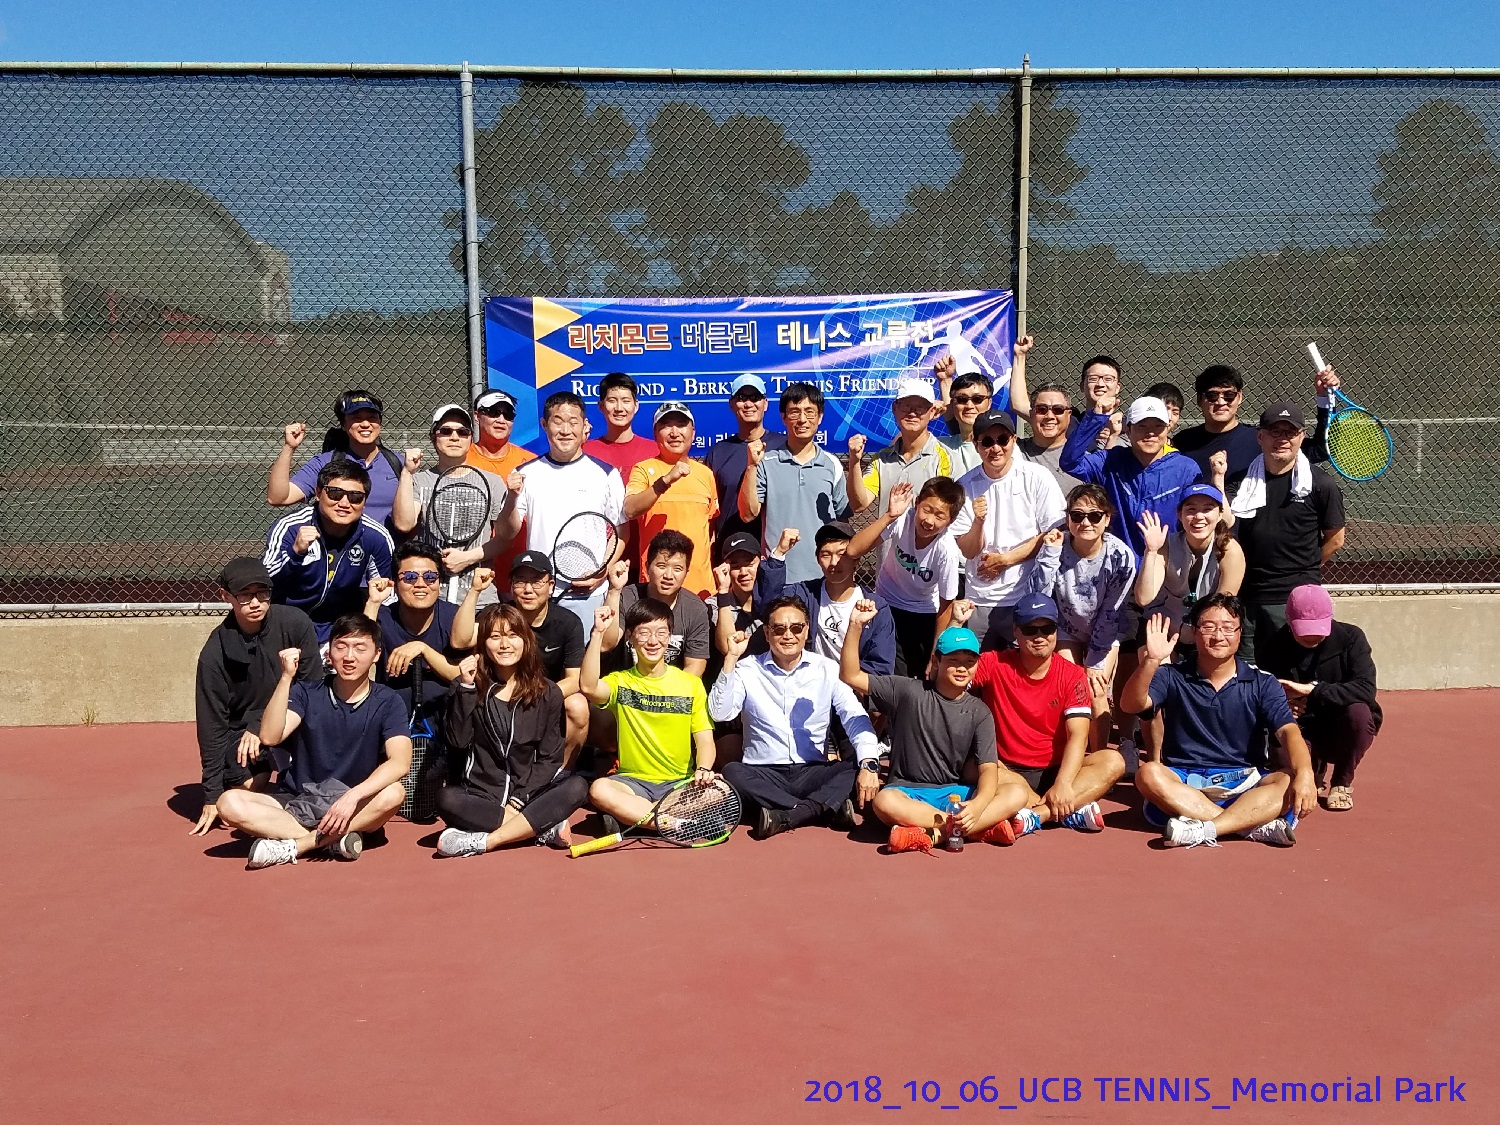 resized_2018_10_06_UCB Tennis at Memorial Park_114923.jpg